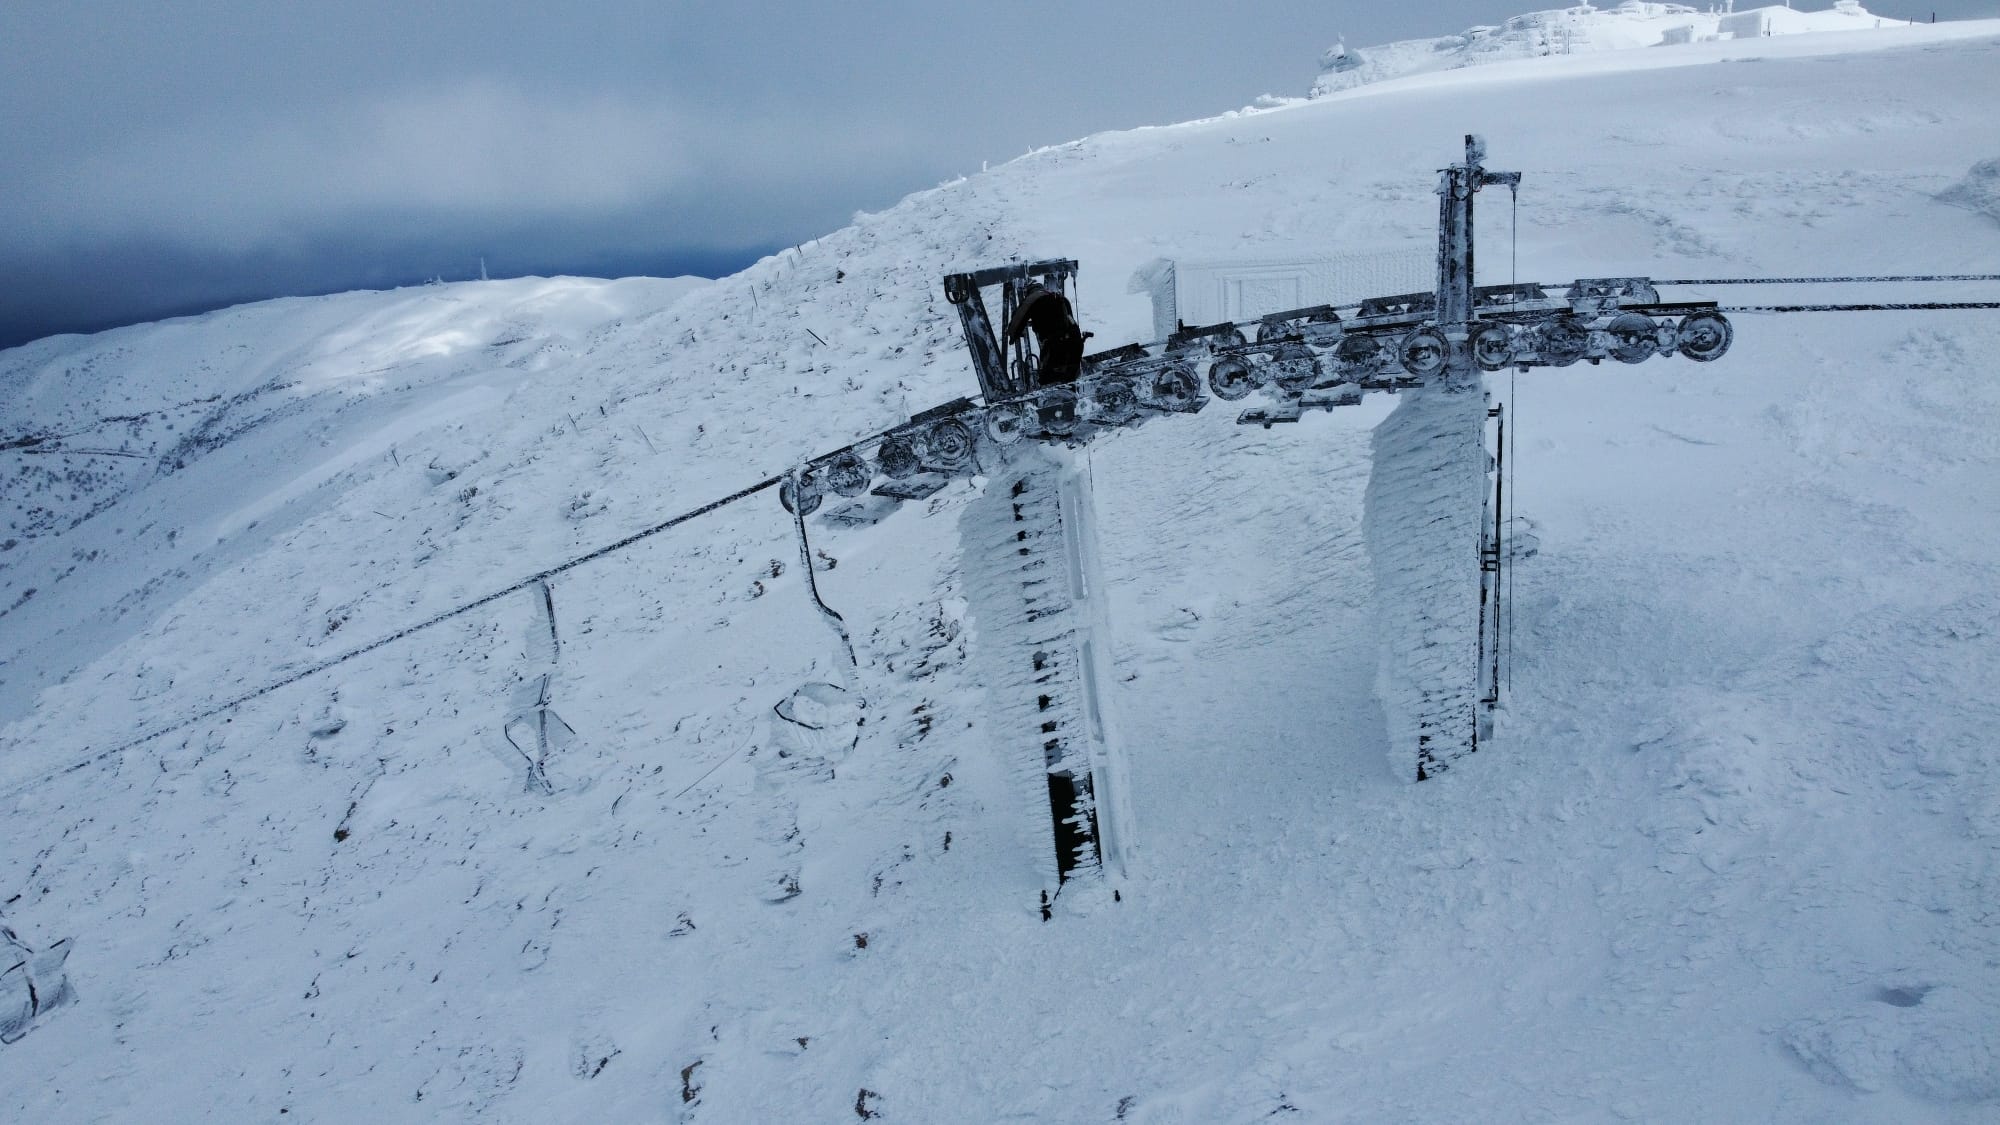 כחצי מטר שלג טרי ויבש התווסף במערכת האחרונה באתר החרמון: במפלס התחתון גובה השלג 1.40 מ’ ובעליון 1.70 מ’